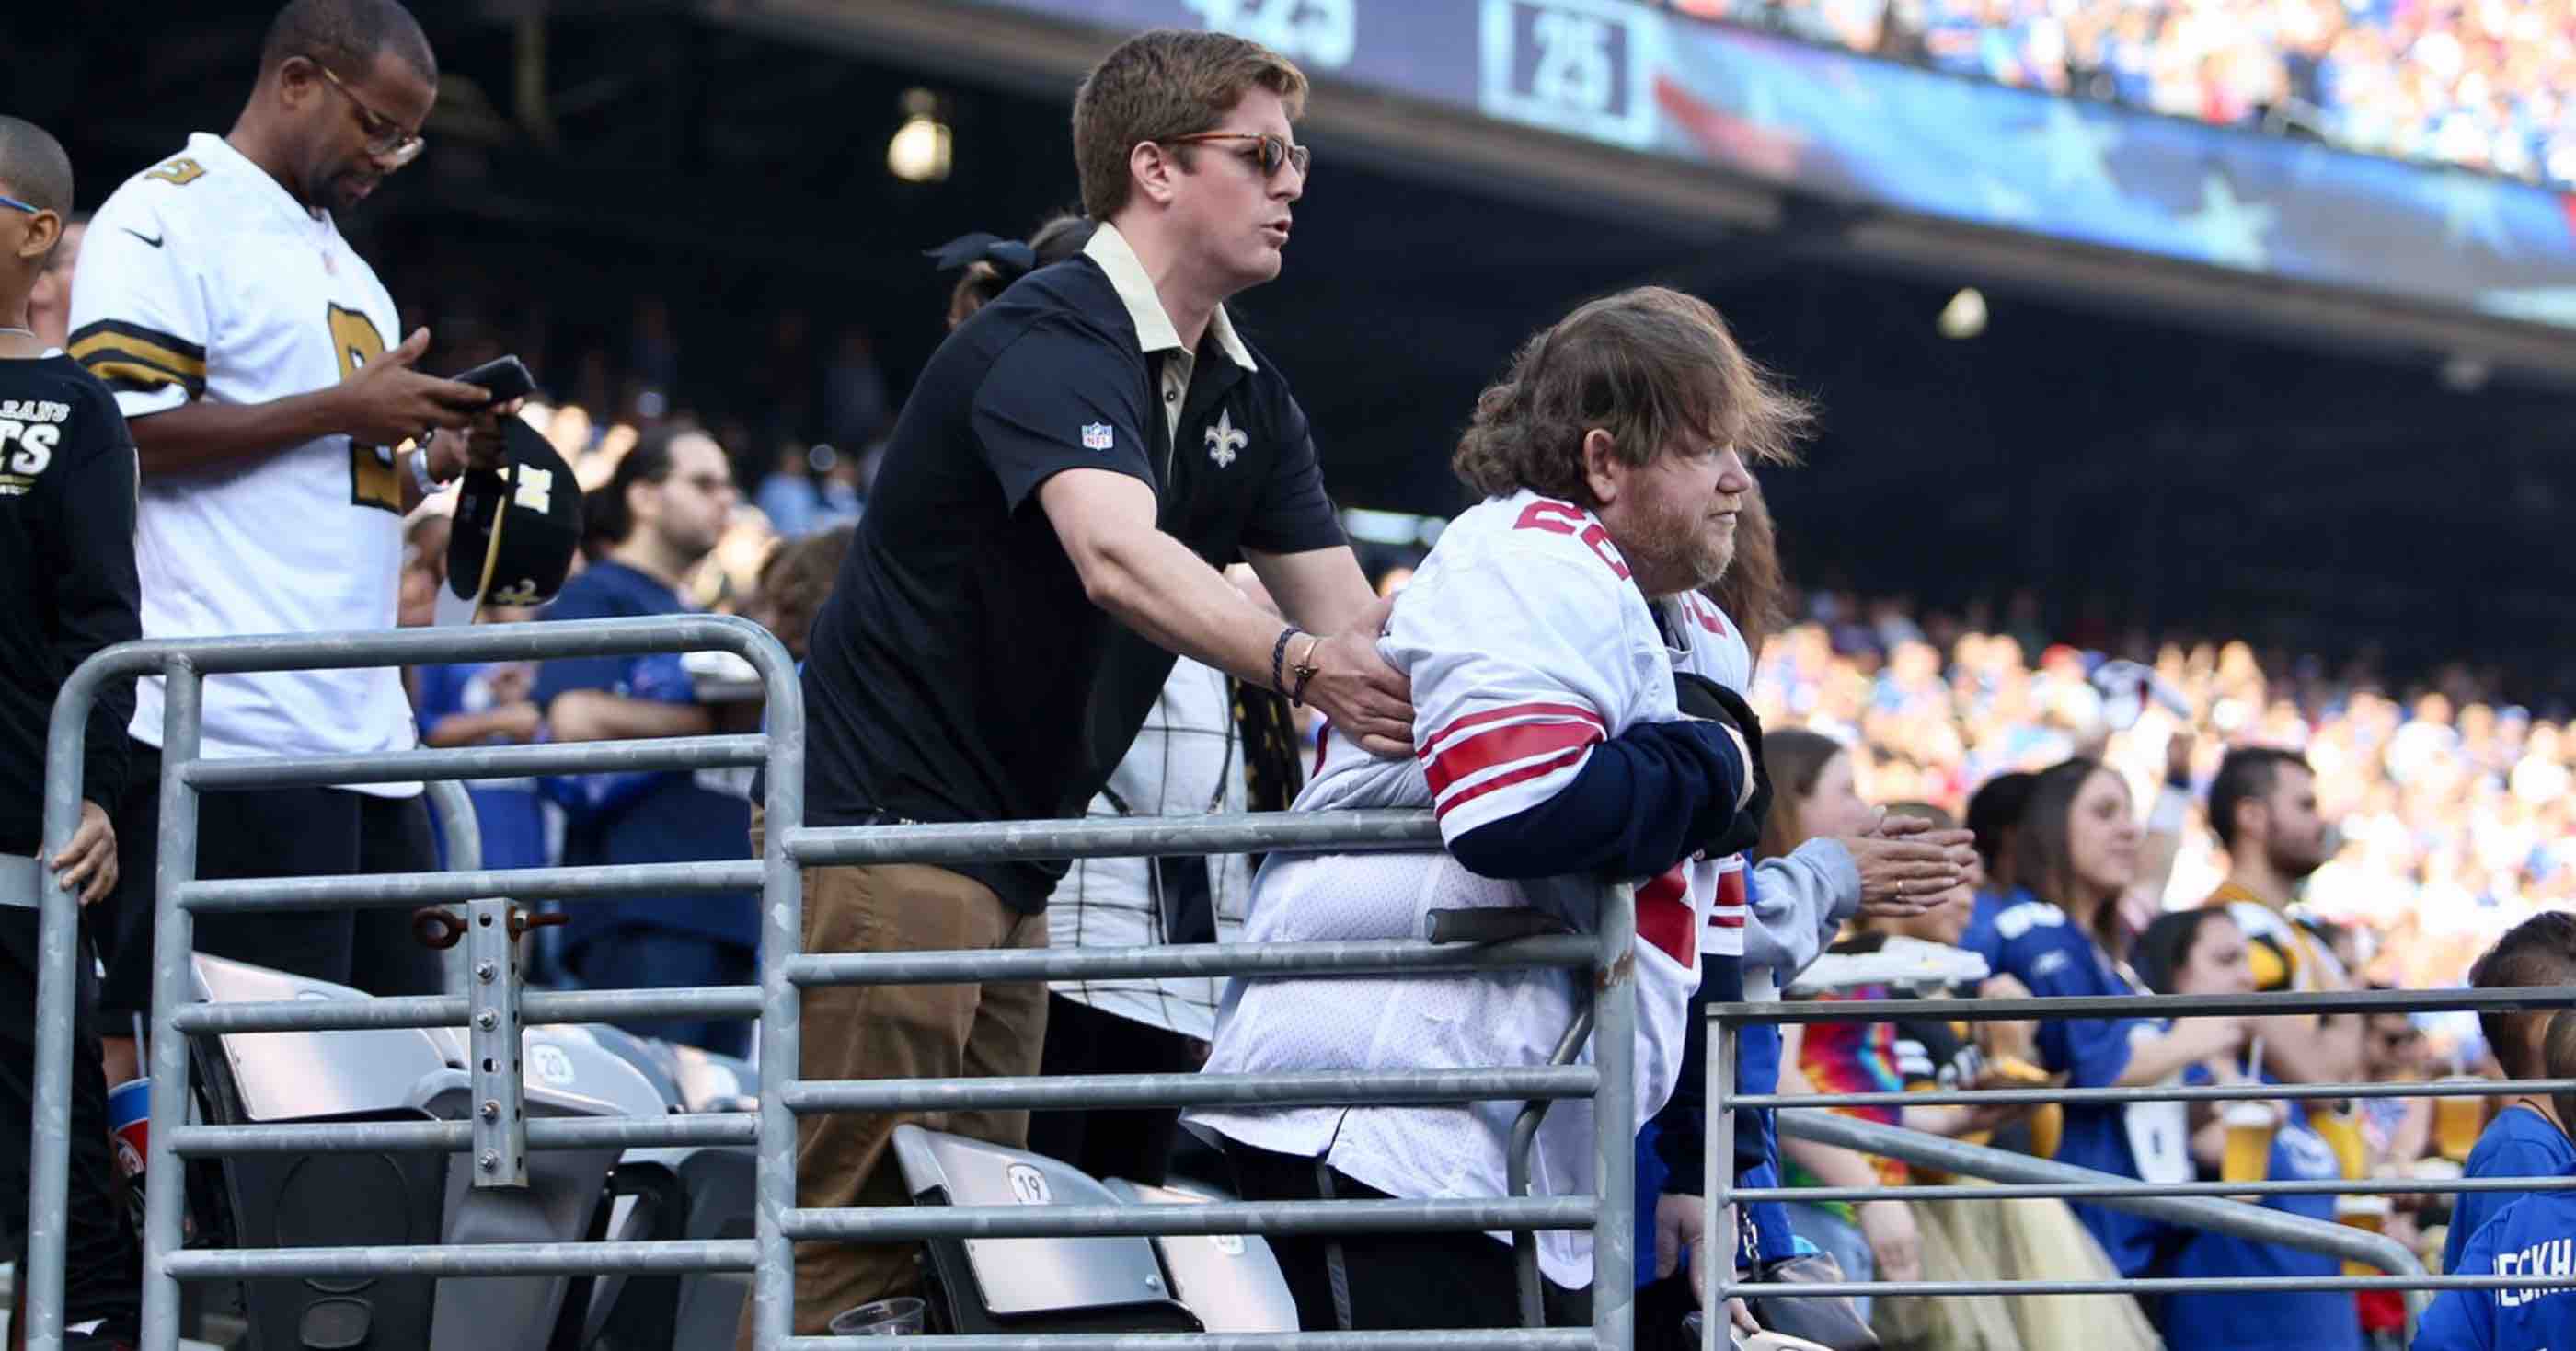 Giants fan, Saints fan - PHoto: Saints Fan Helps Disabled Giants Fan Stand